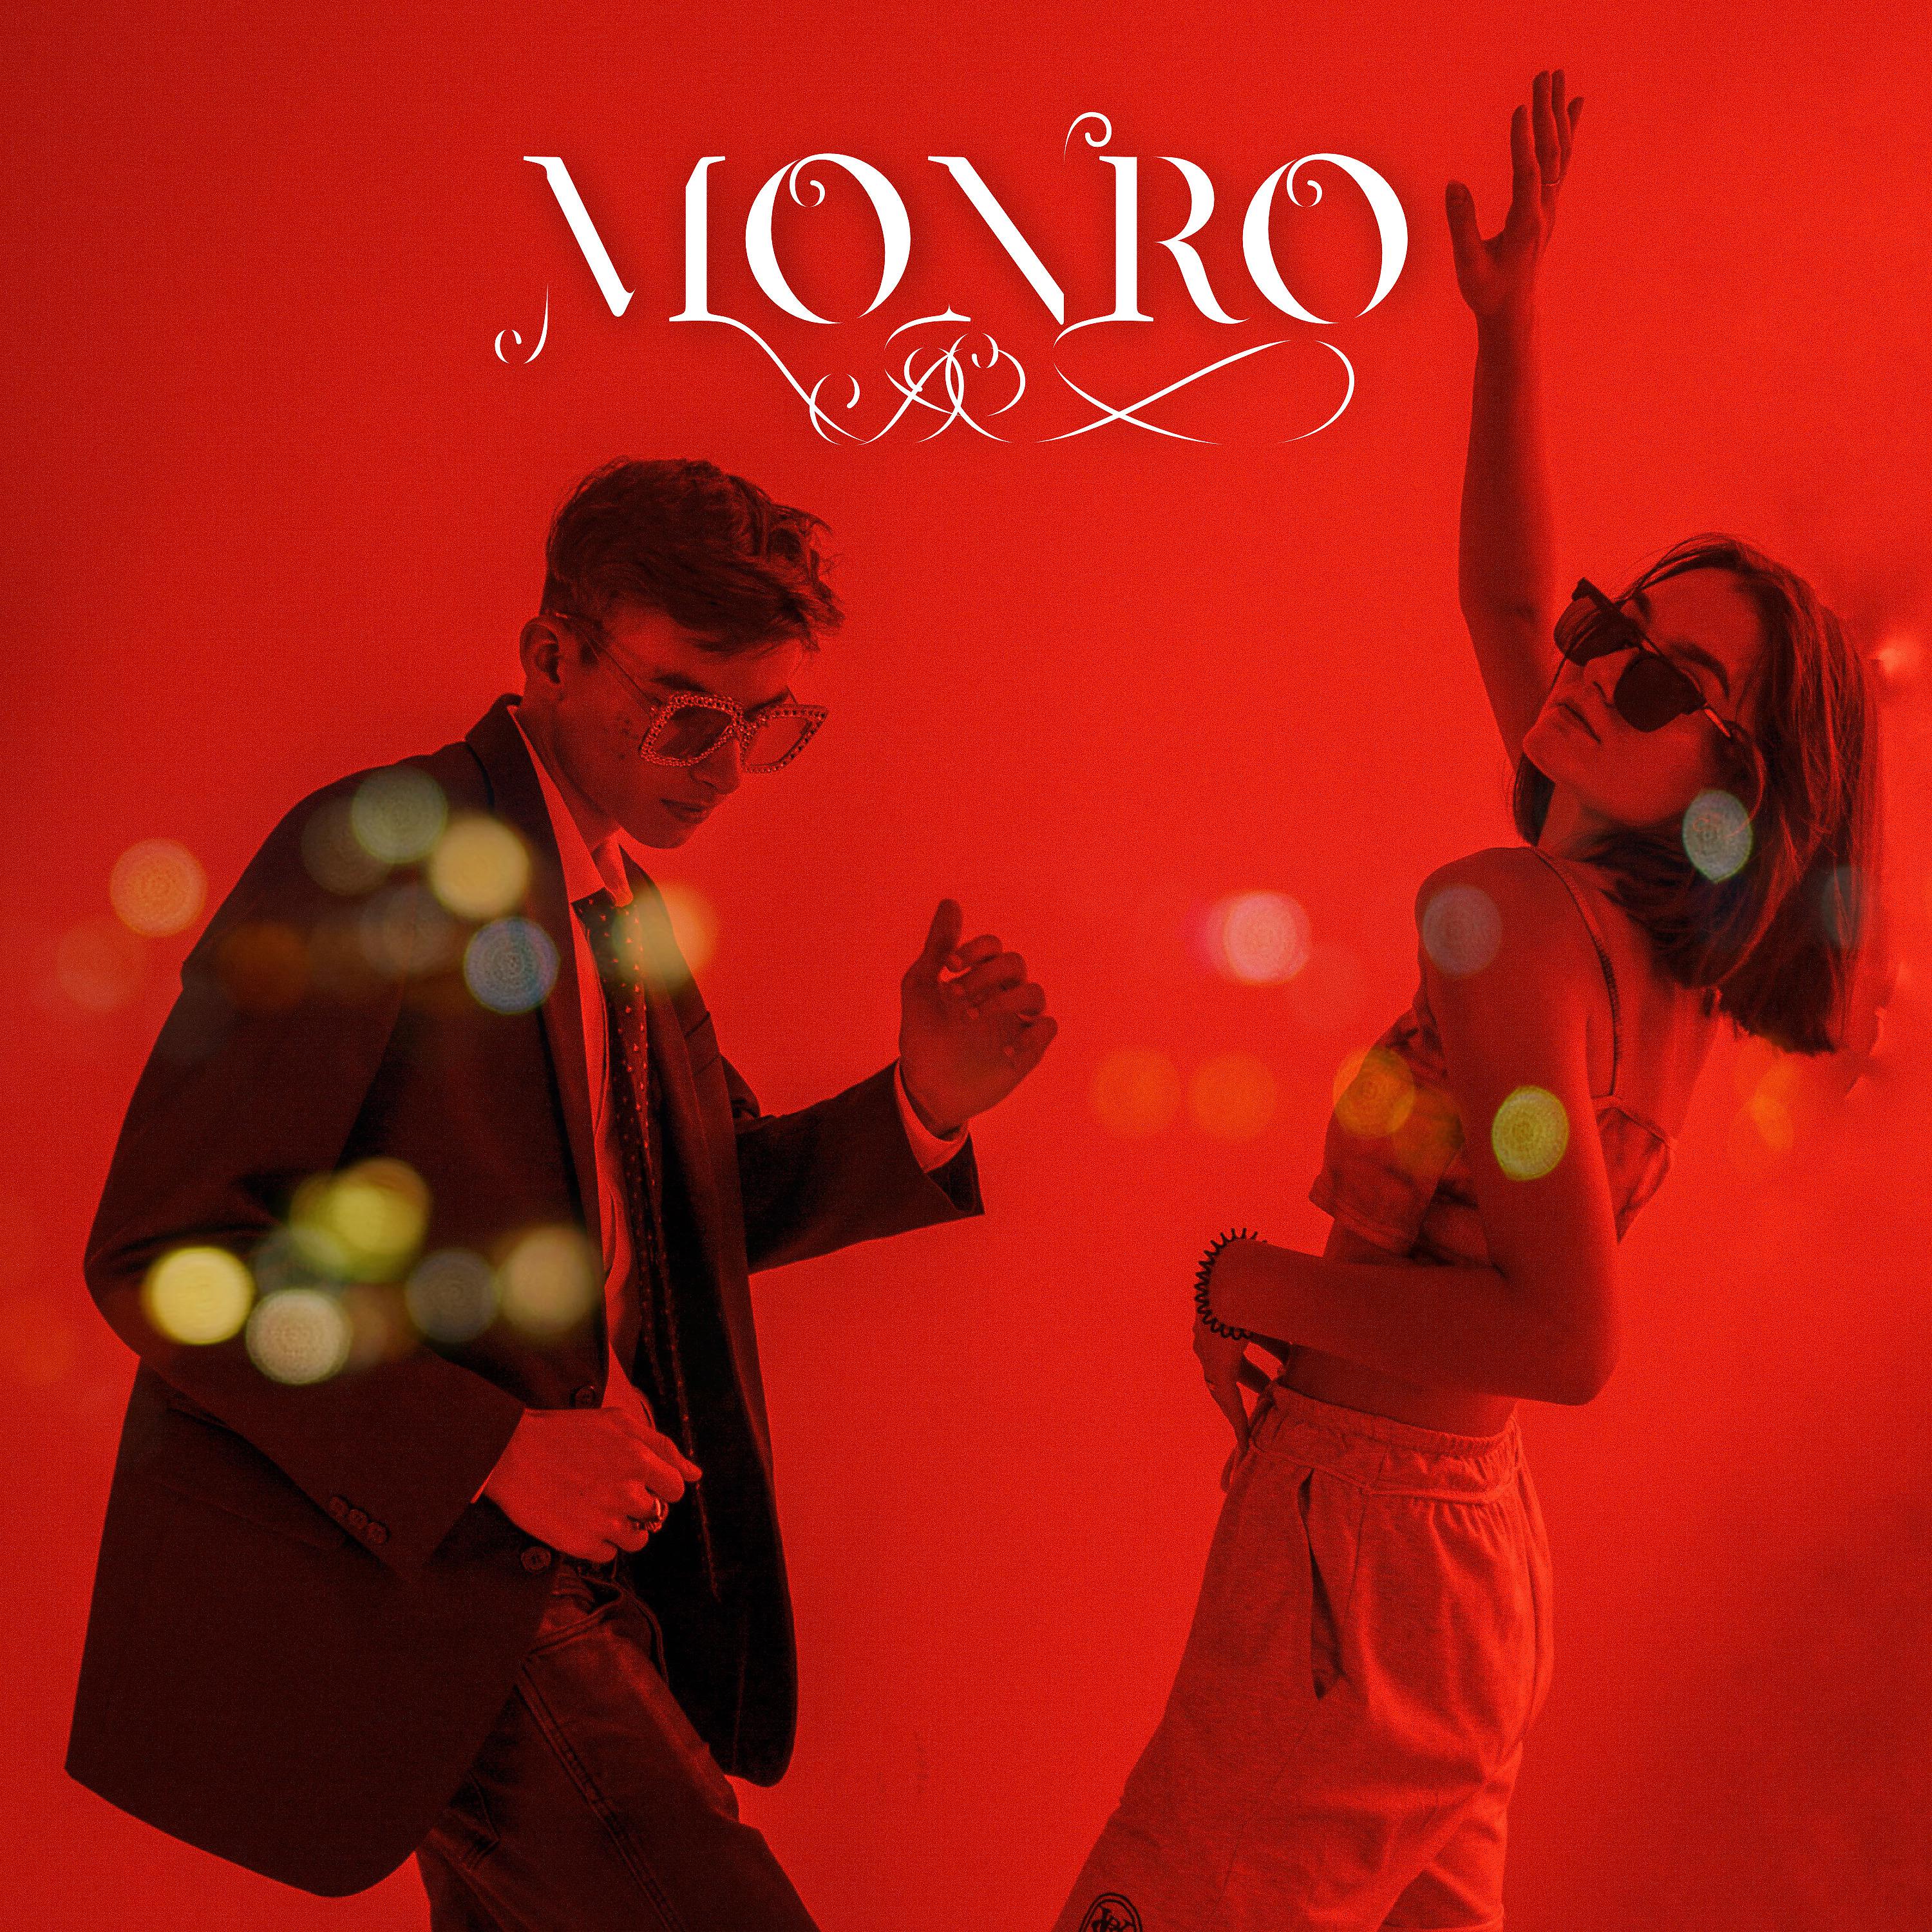 Постер альбома Monro